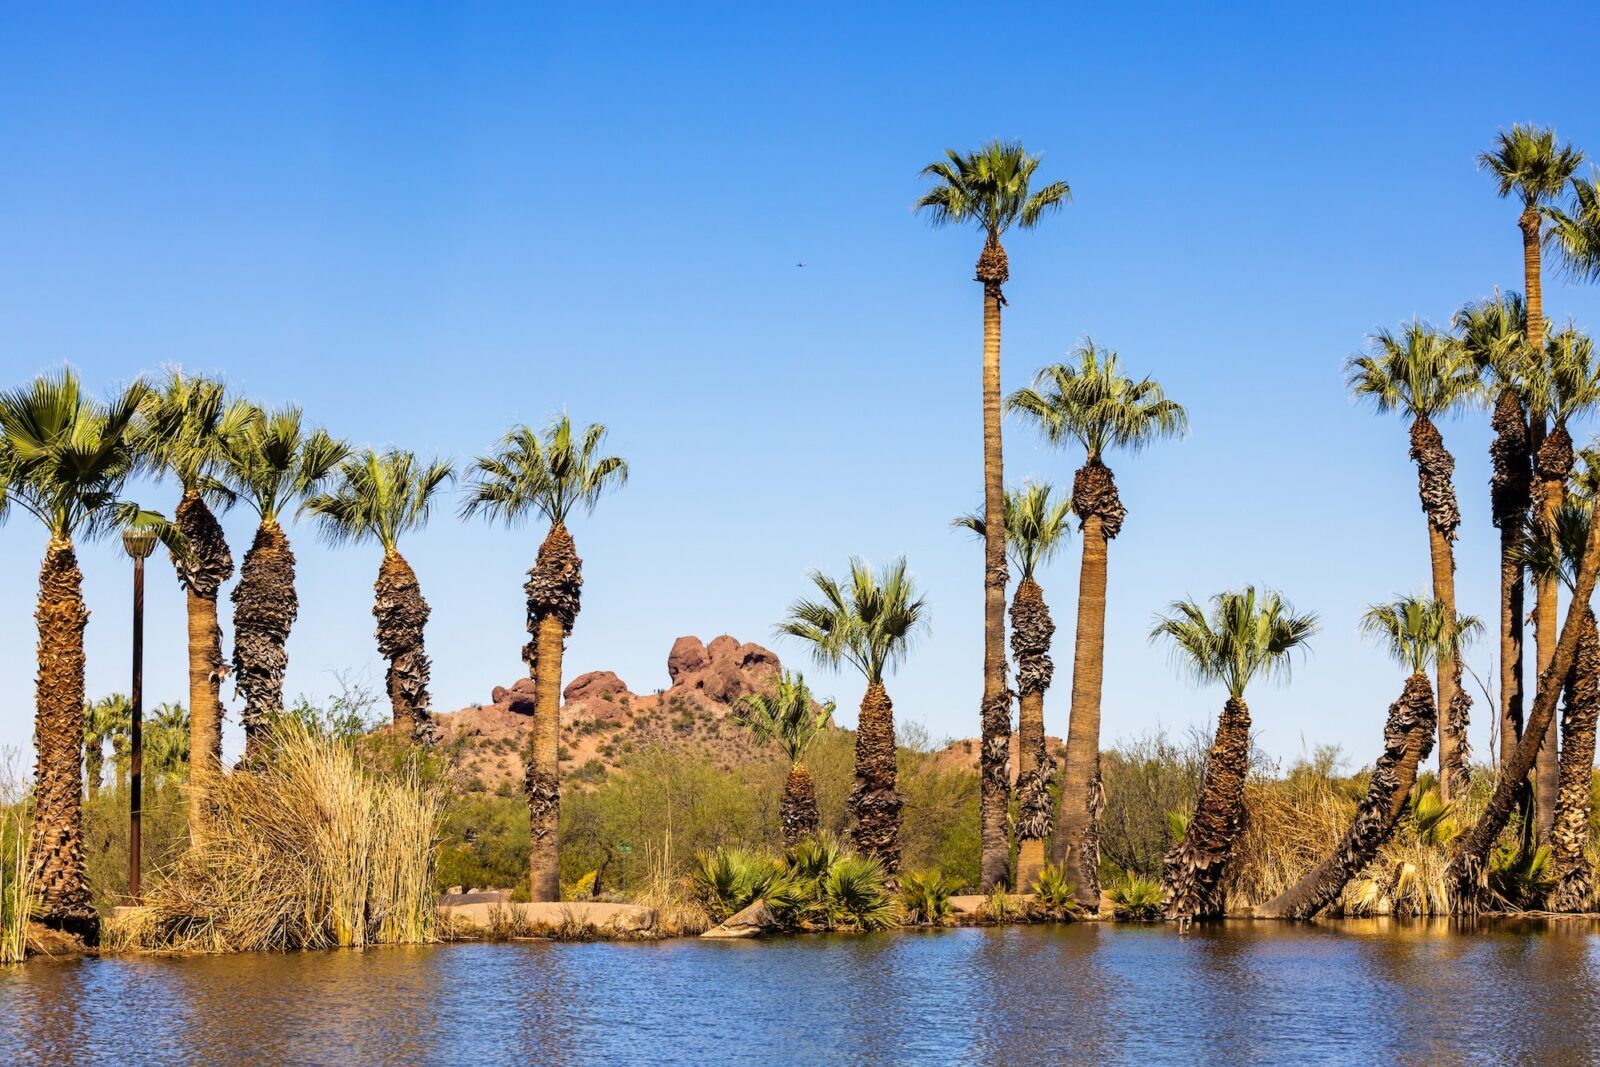 Pond in Papago Park - Tempe Arizona USA